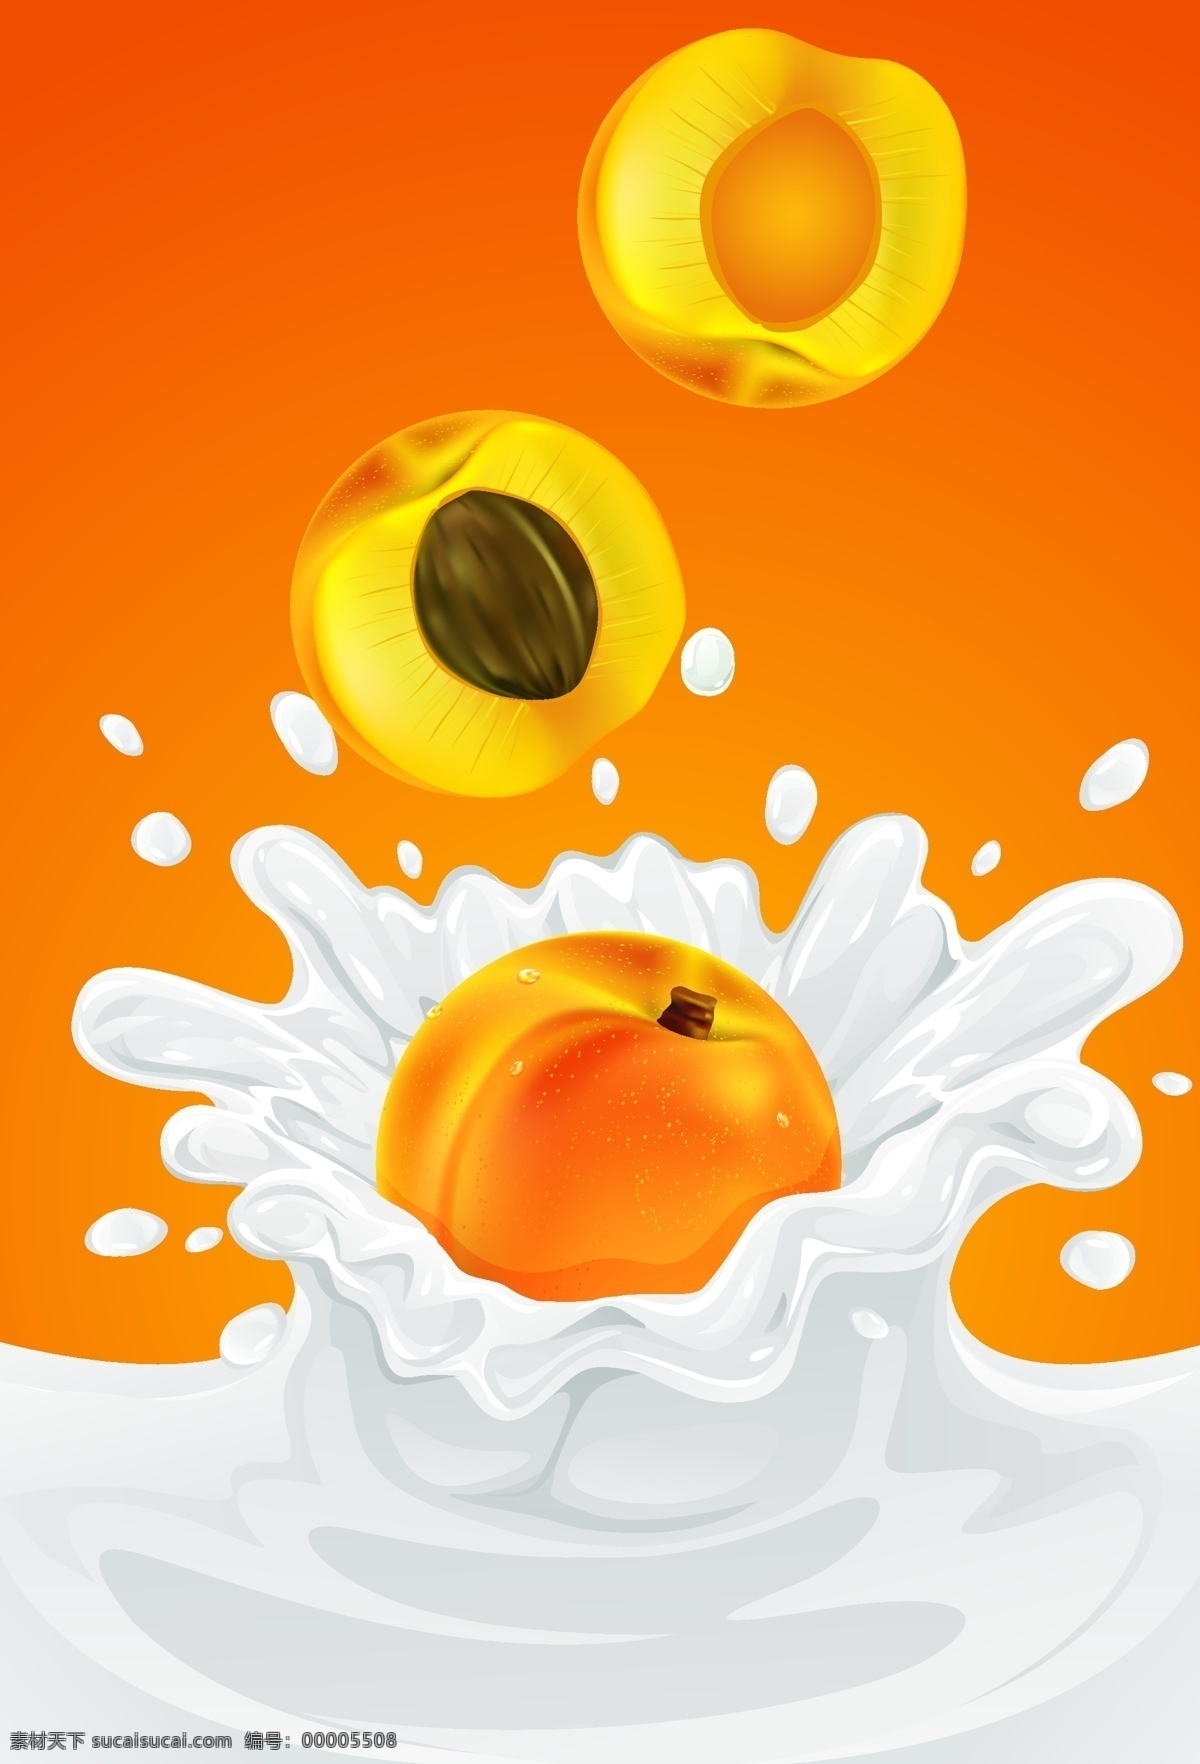 黄桃 牛奶 美味 水果 矢量图